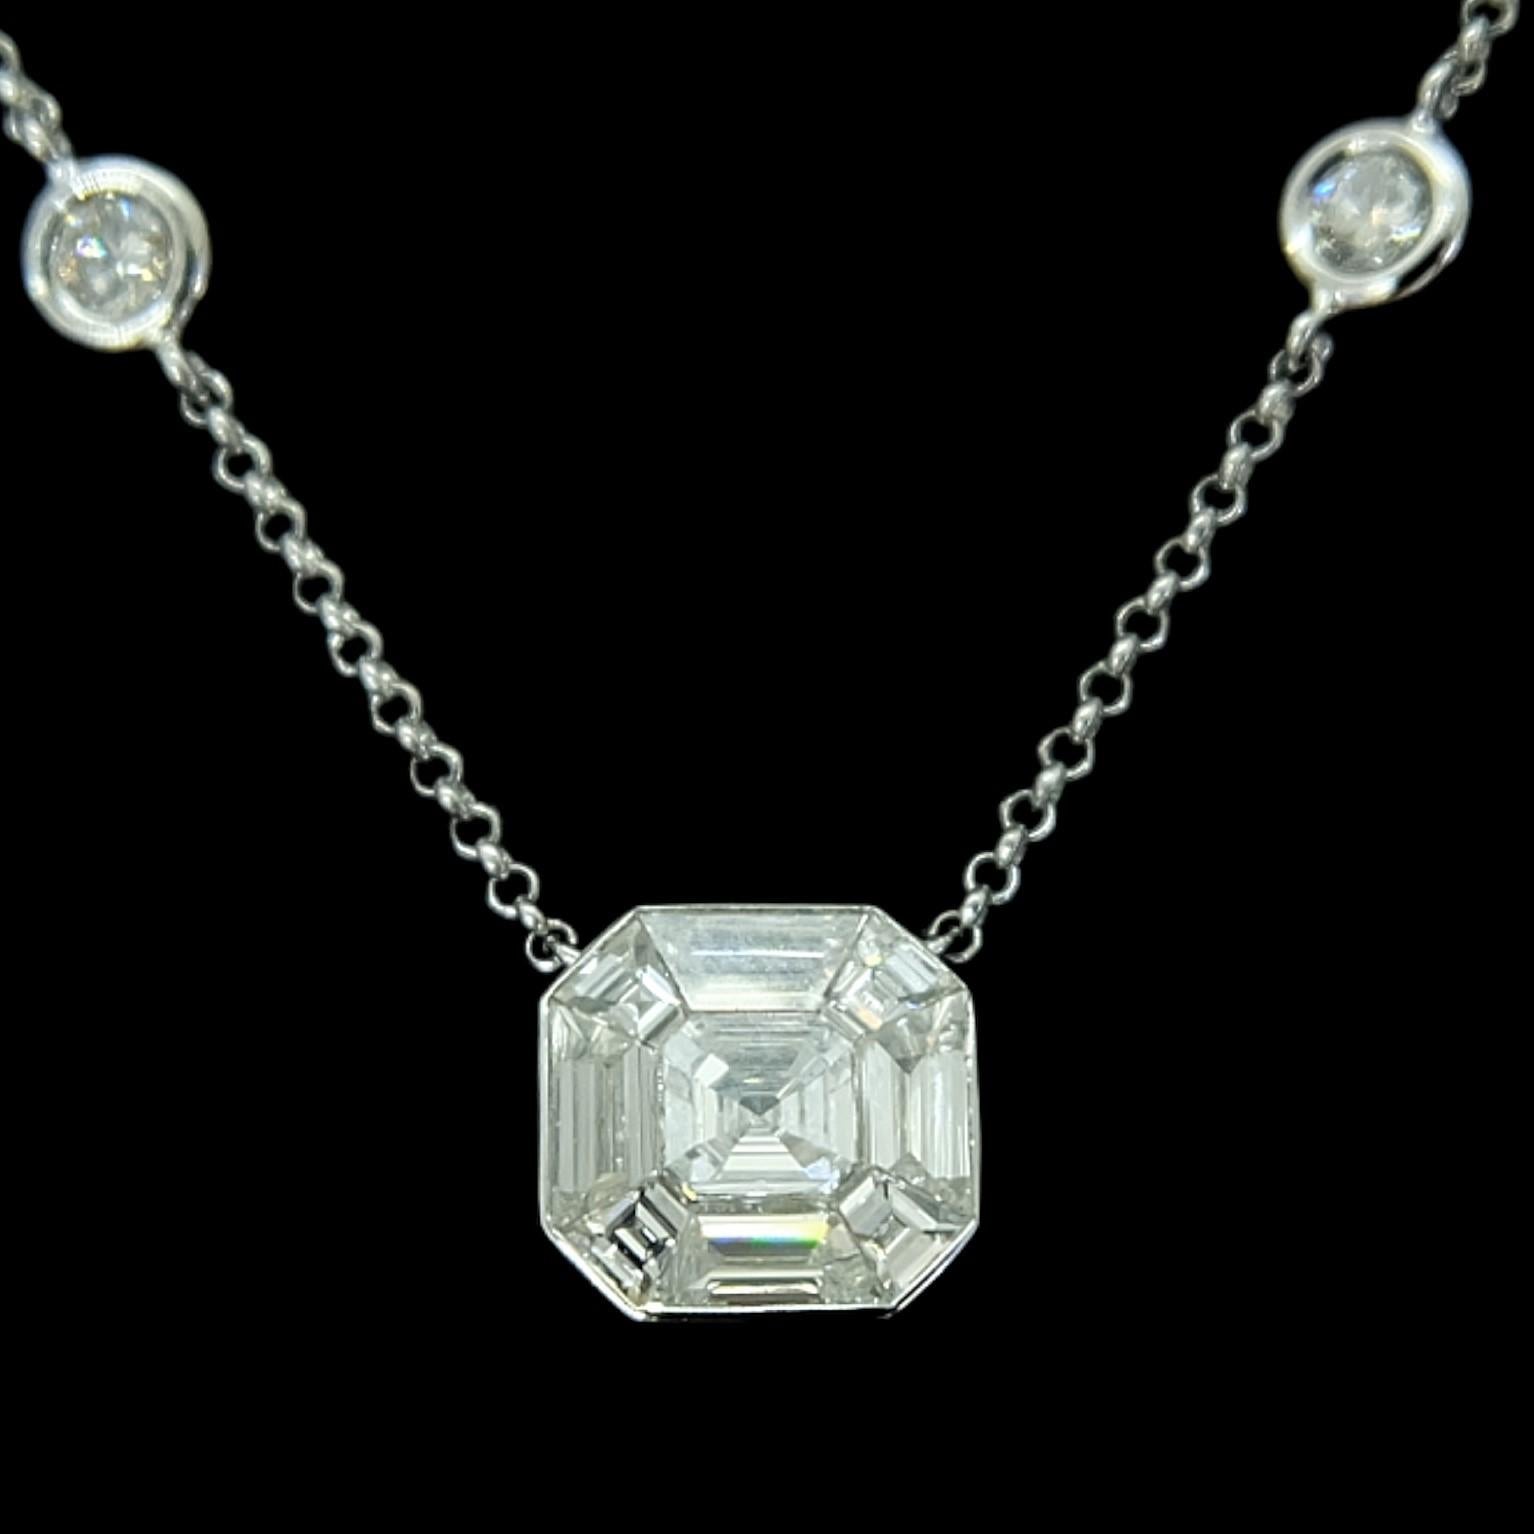 Collier en platine Sophia D. composé d'un pendentif en diamant taille coussin de 0,92 carat et de 6 diamants ronds d'un poids total de 0,56 carat. La longueur du collier est de 9